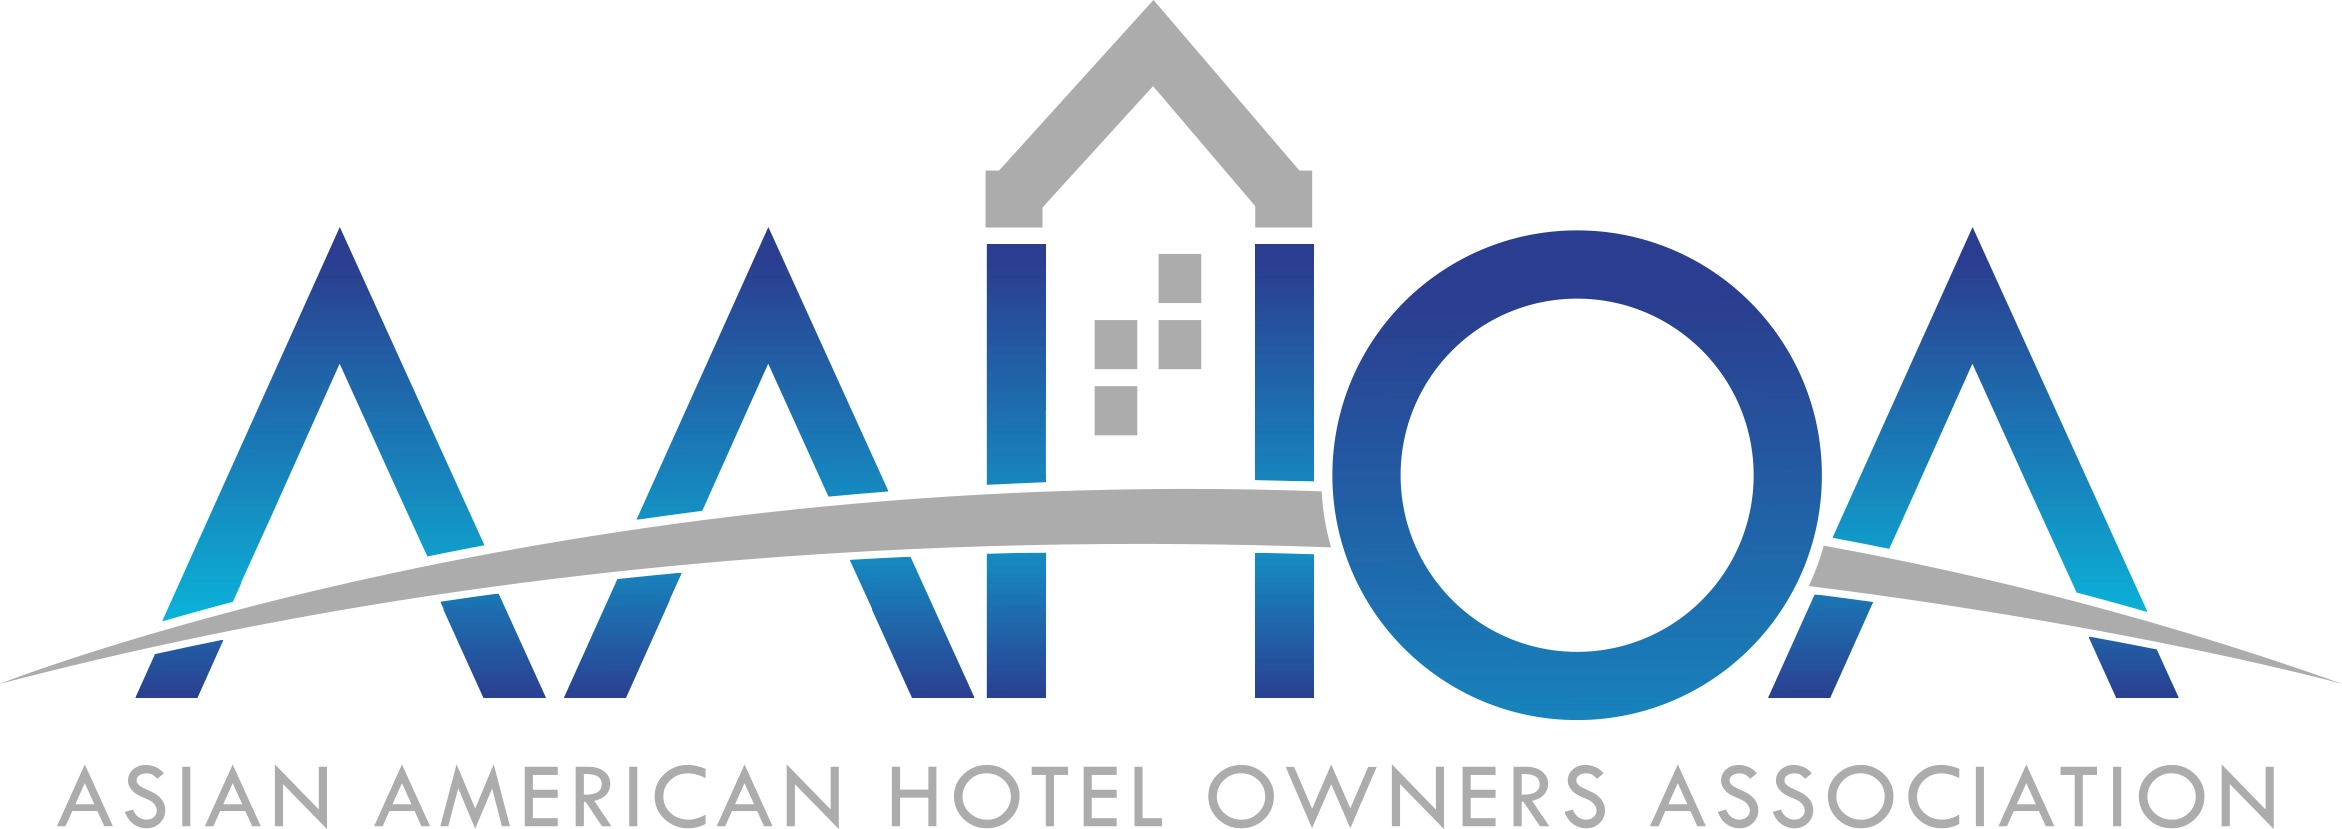 AAHOA-Logo-Gradient